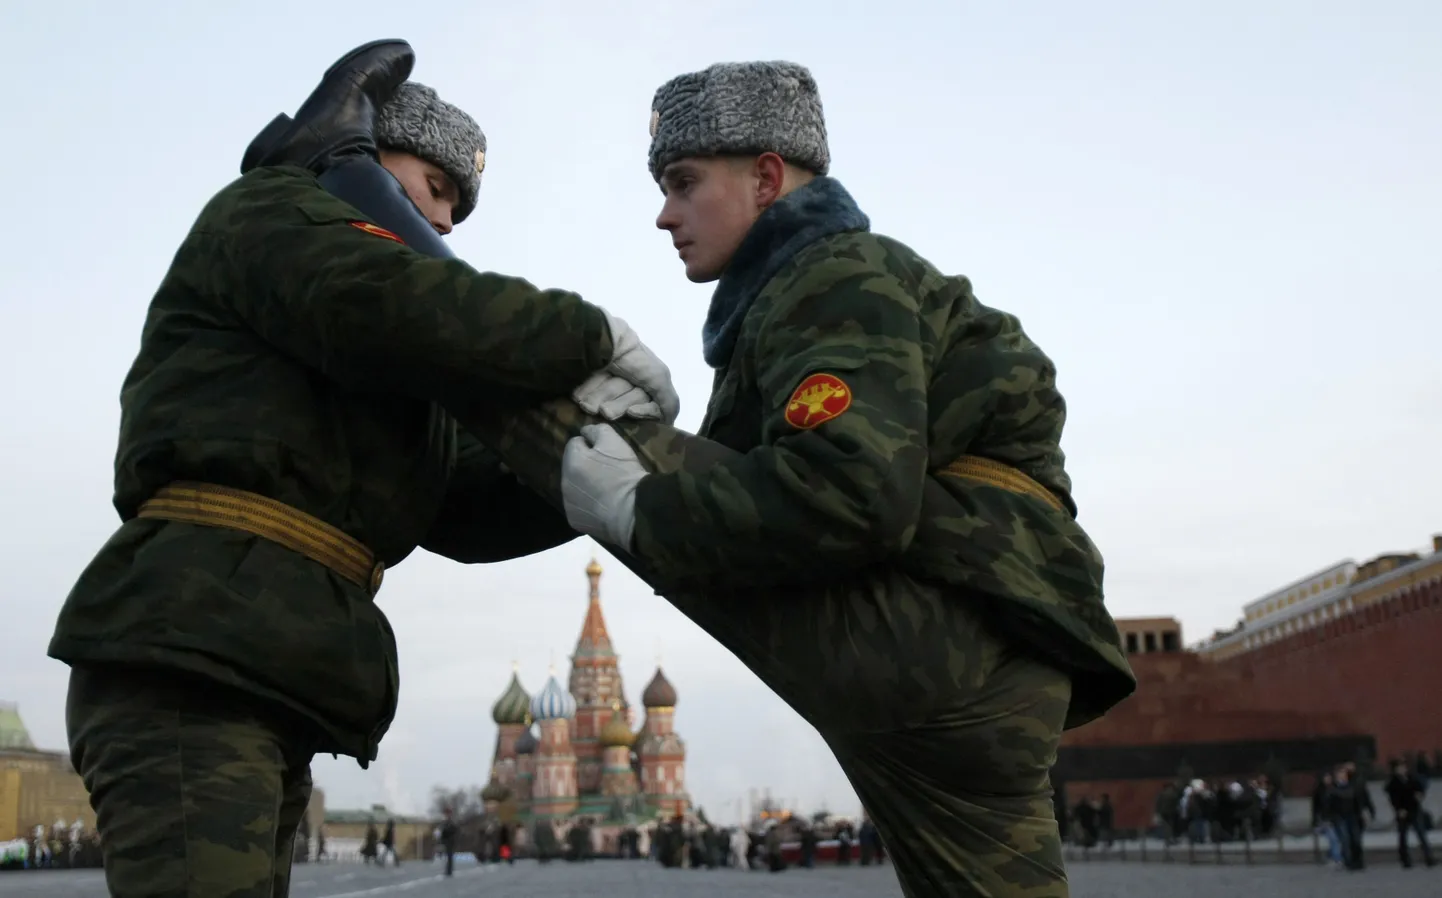 Vene sõjaväelased paraadiks harjutamas.